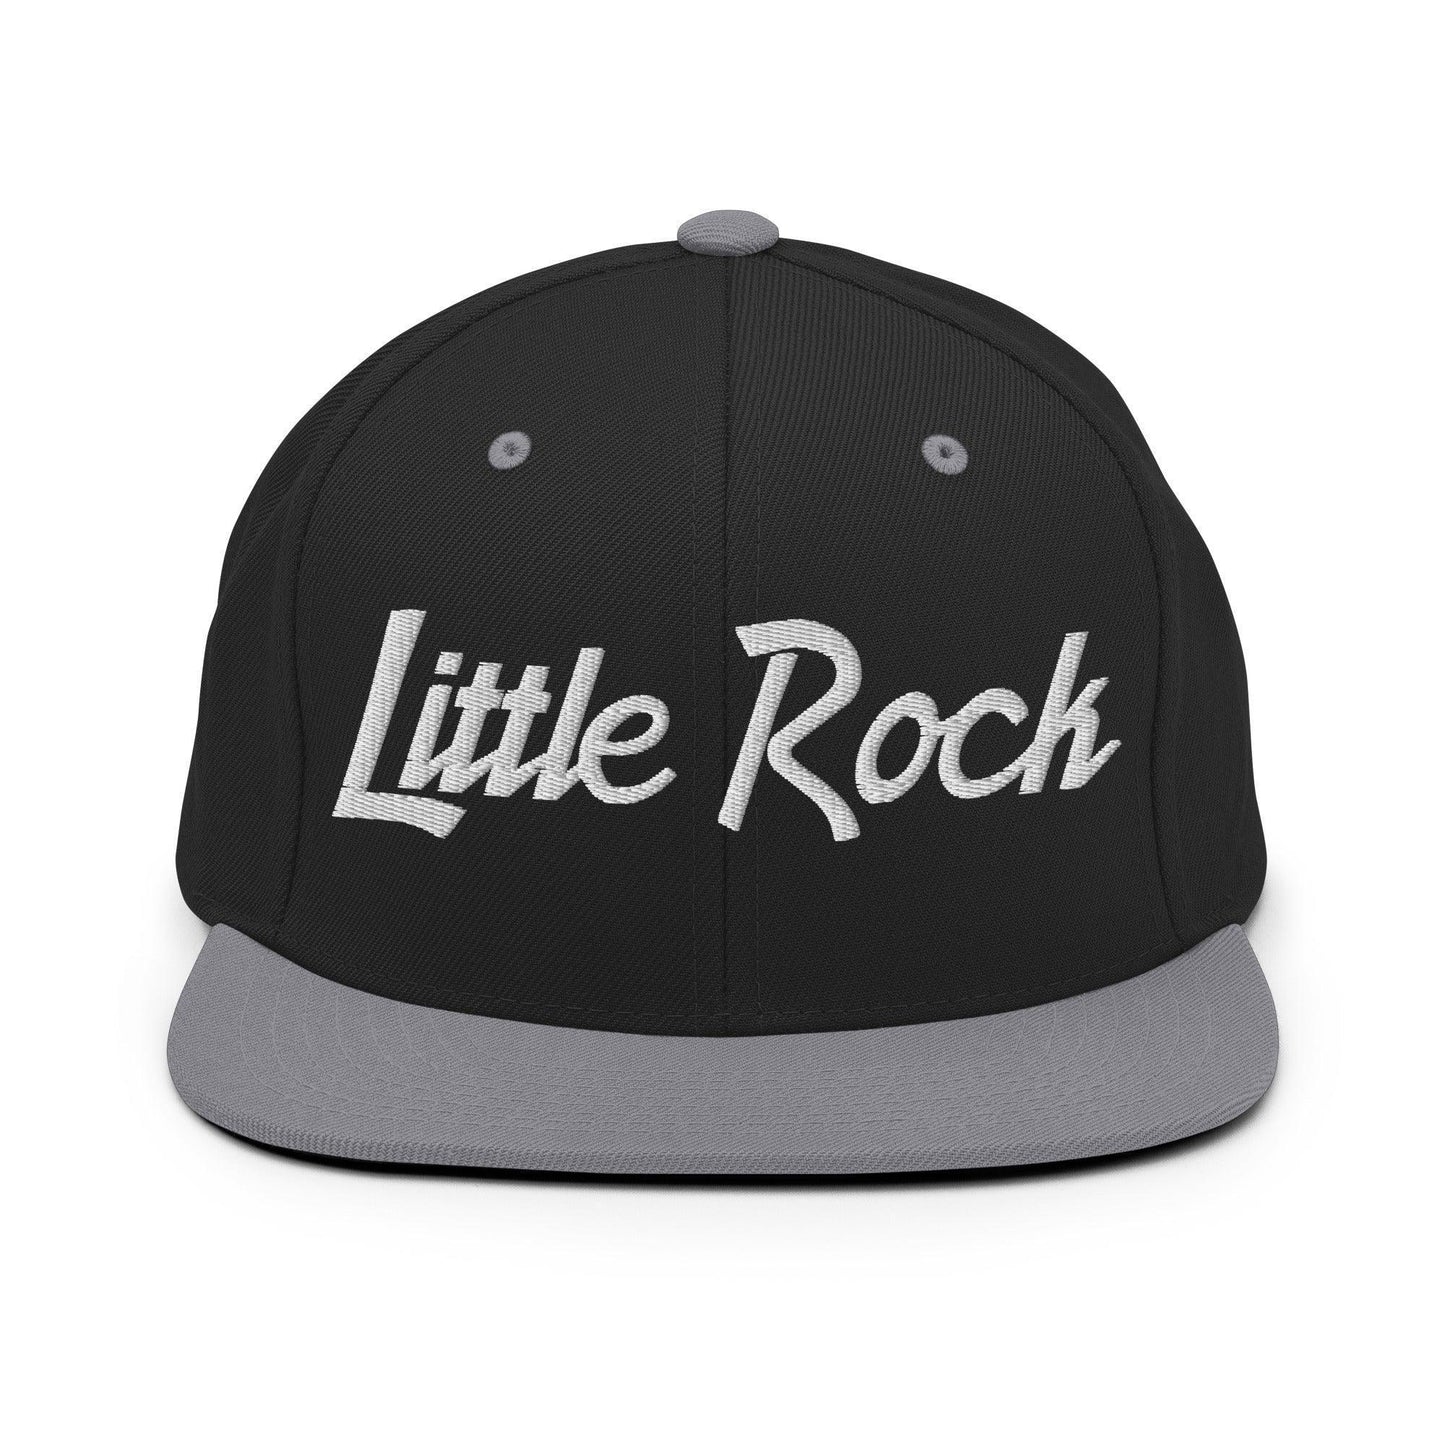 Little Rock Script Snapback Hat Black Silver